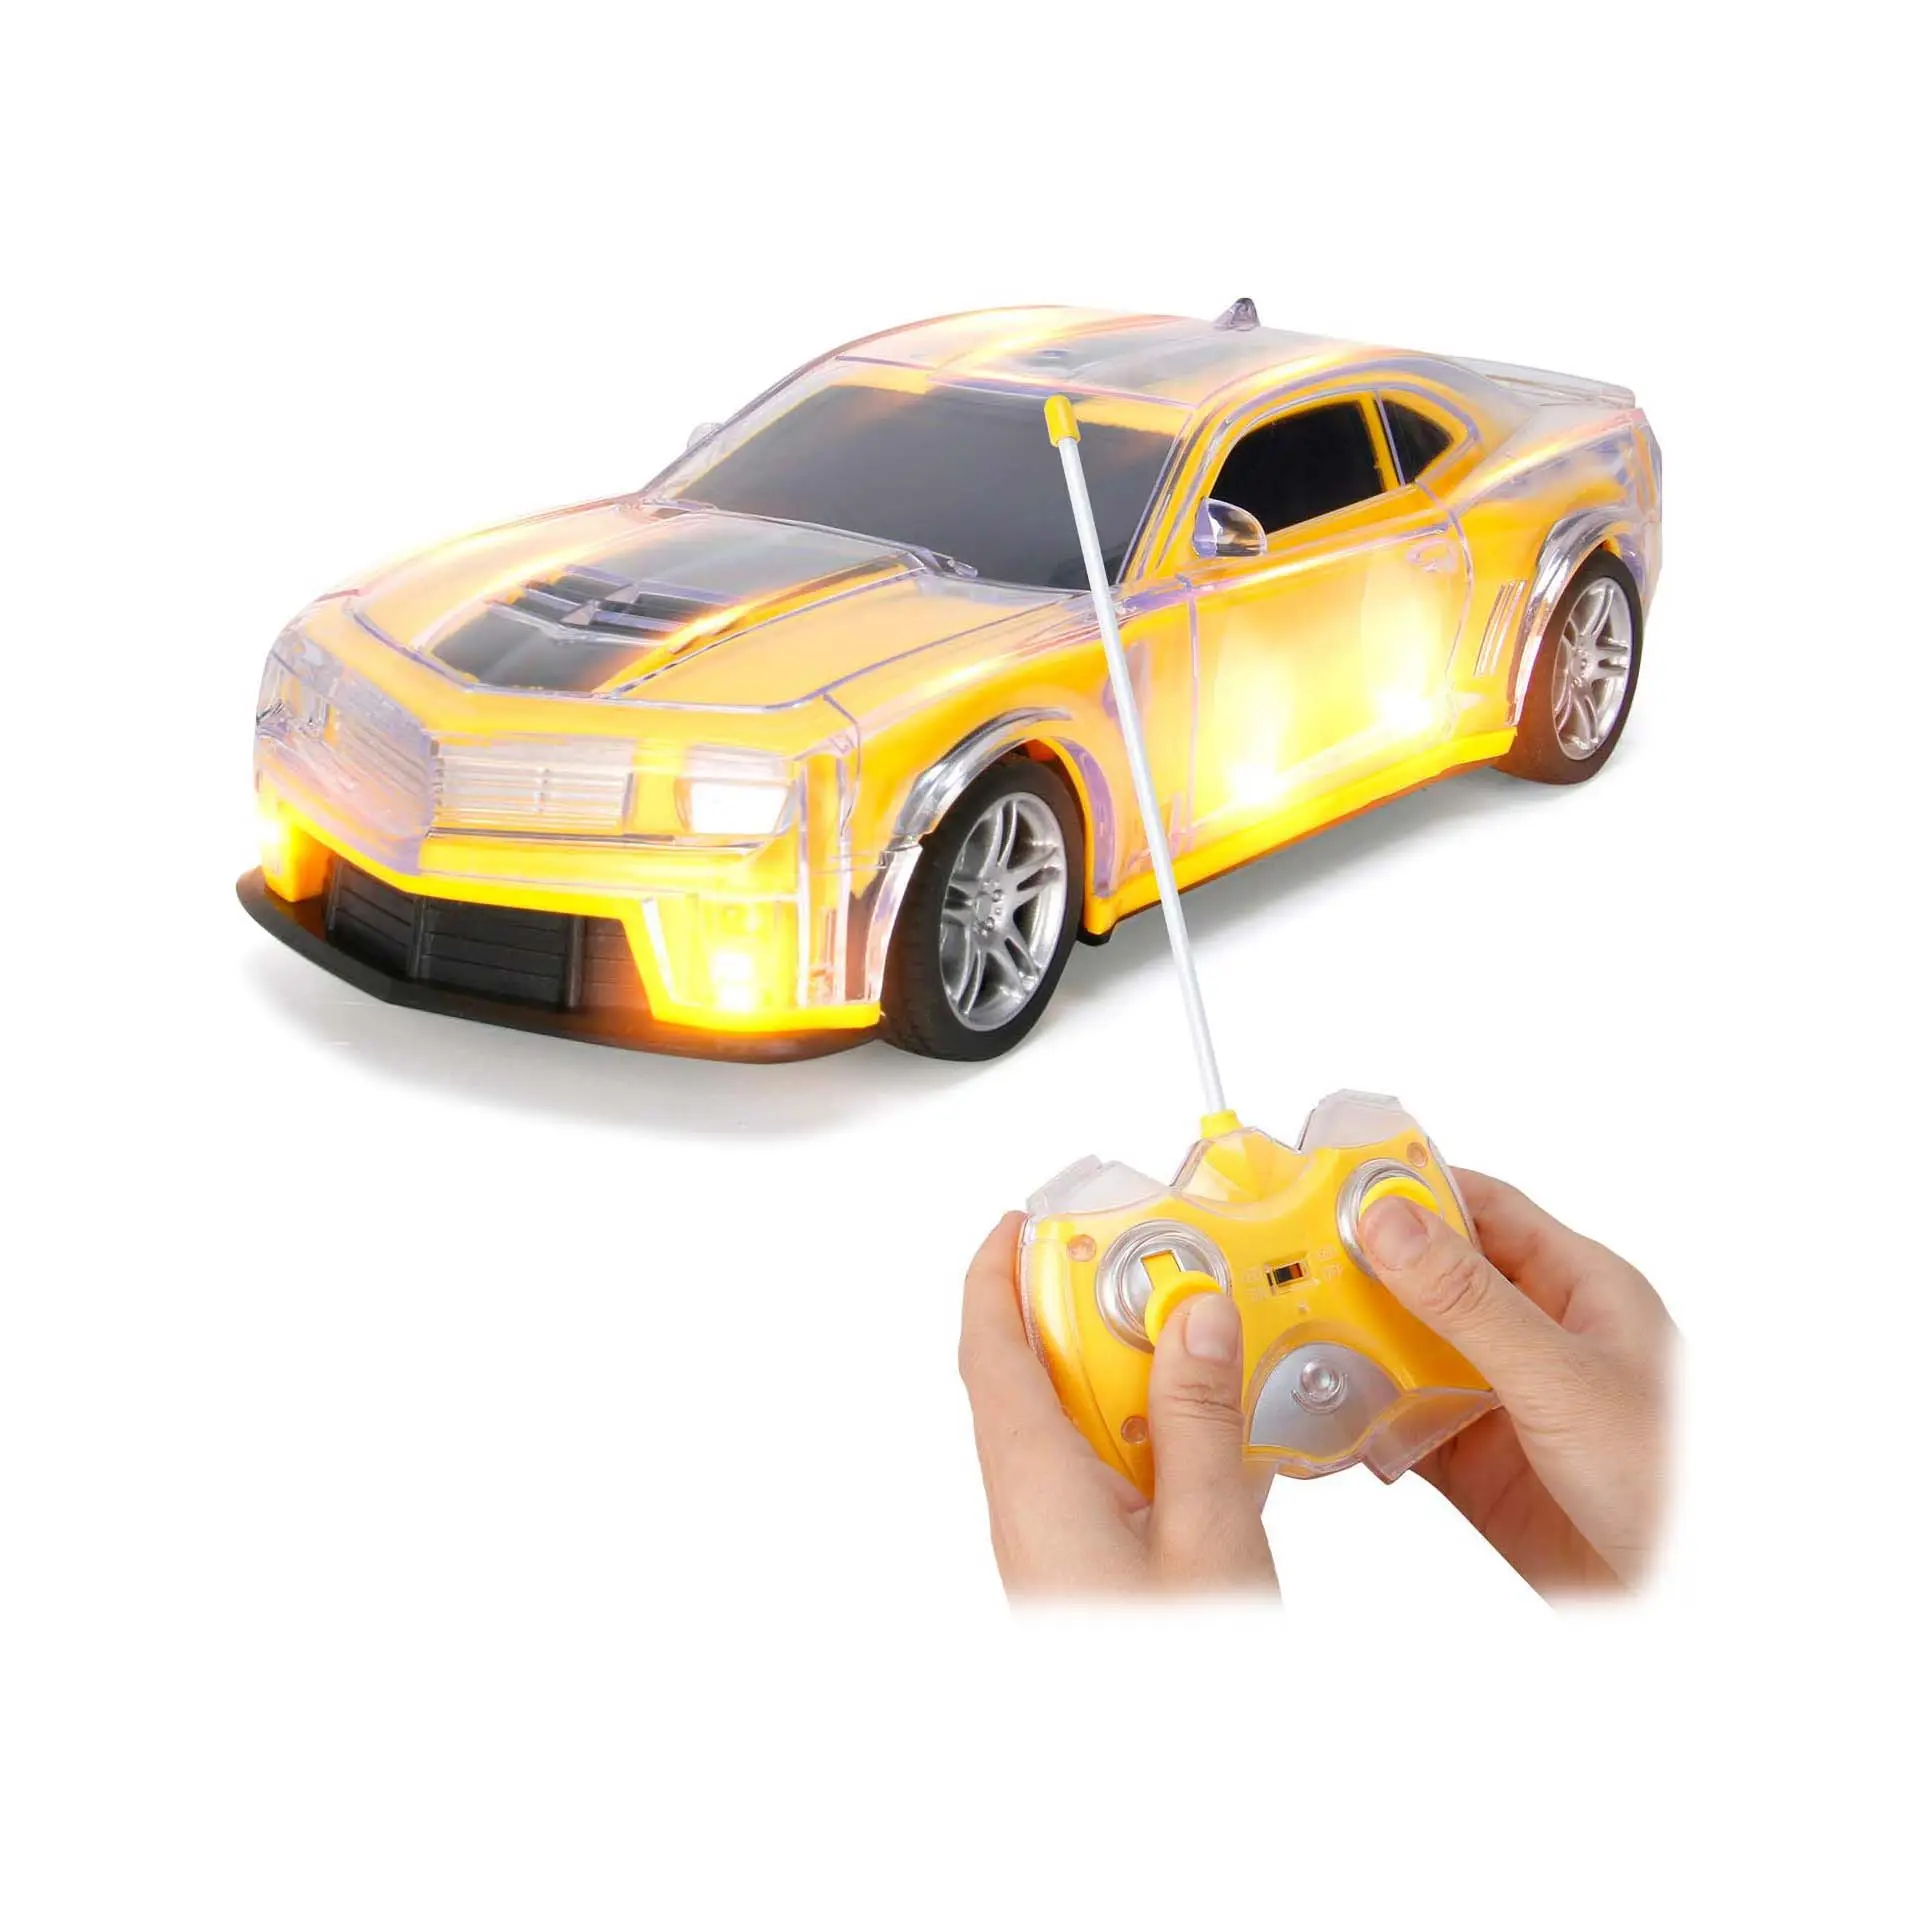 Light Up RC uzaktan kumanda yarış araba 1:20 ölçekli radyo kontrol araba yanıp sönen LED işıkları ile-İdeal hediye oyuncak çocuklar için (sarı)